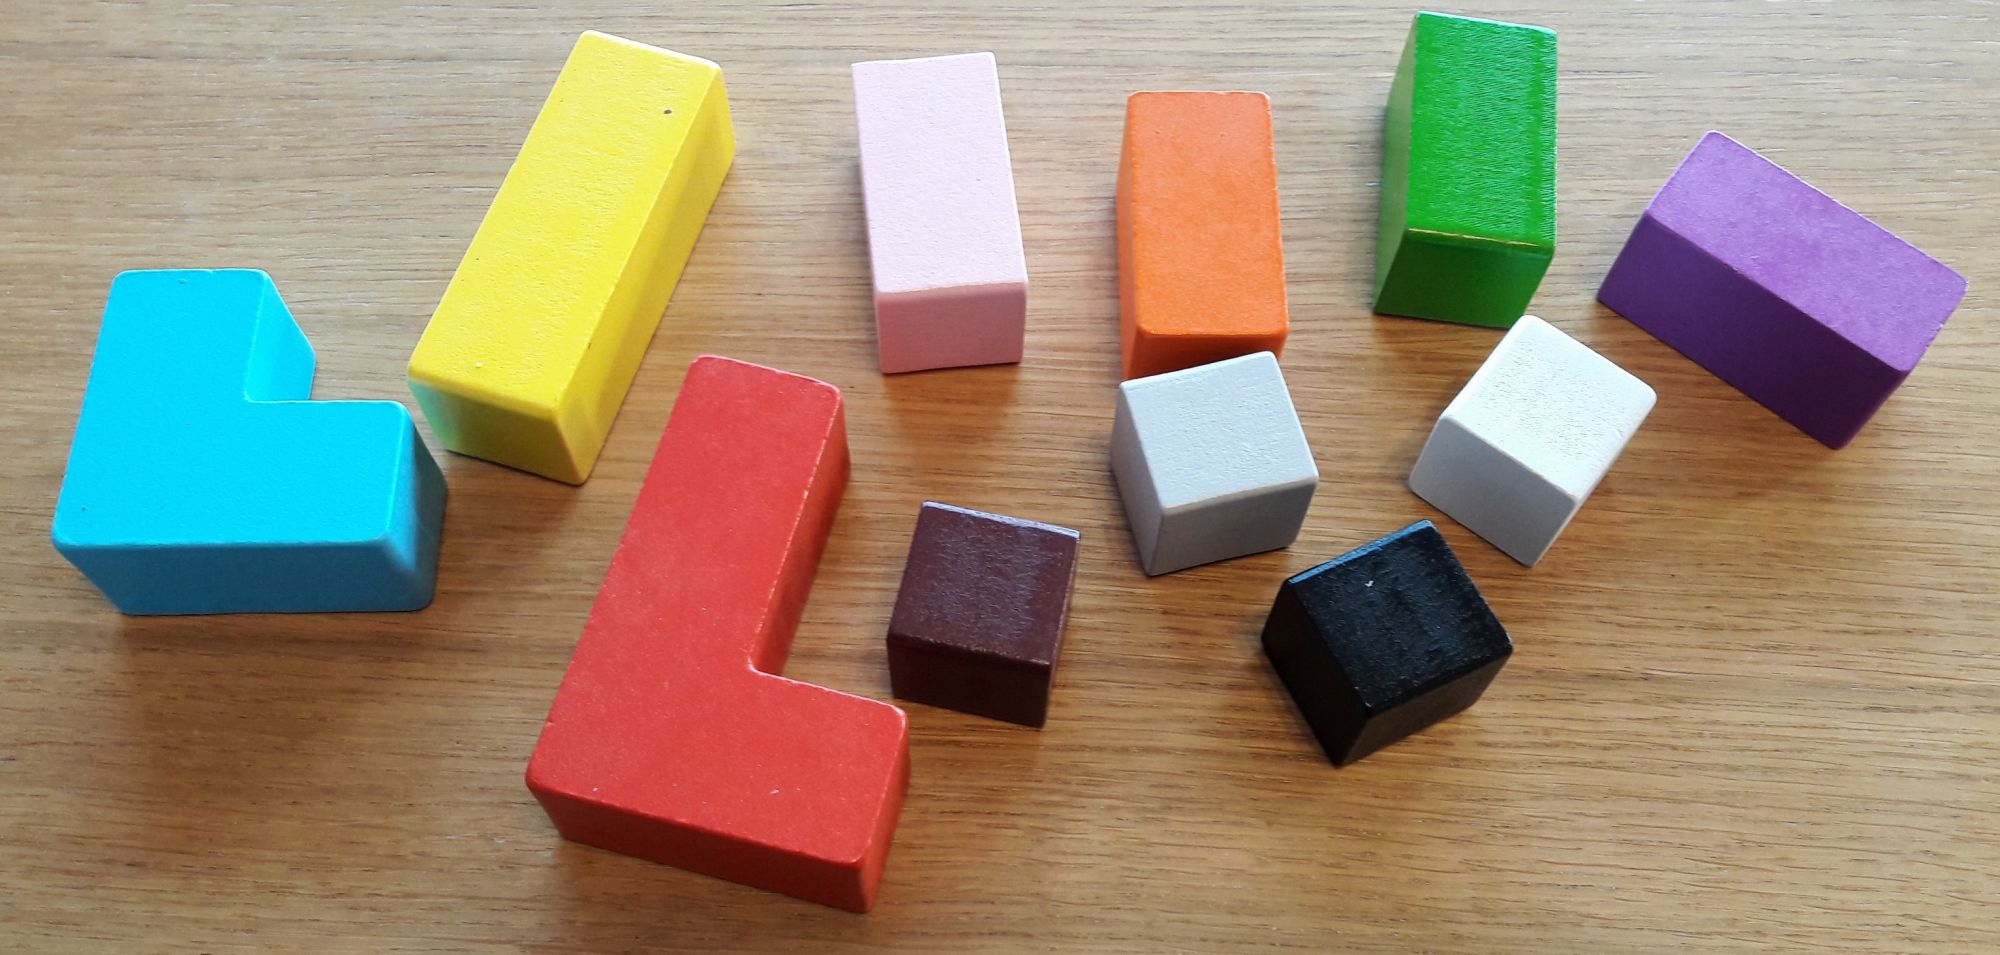 Que serait un jeu de construction sans blocs. Ici en bois en forme de tetris mais aussi plus petits.